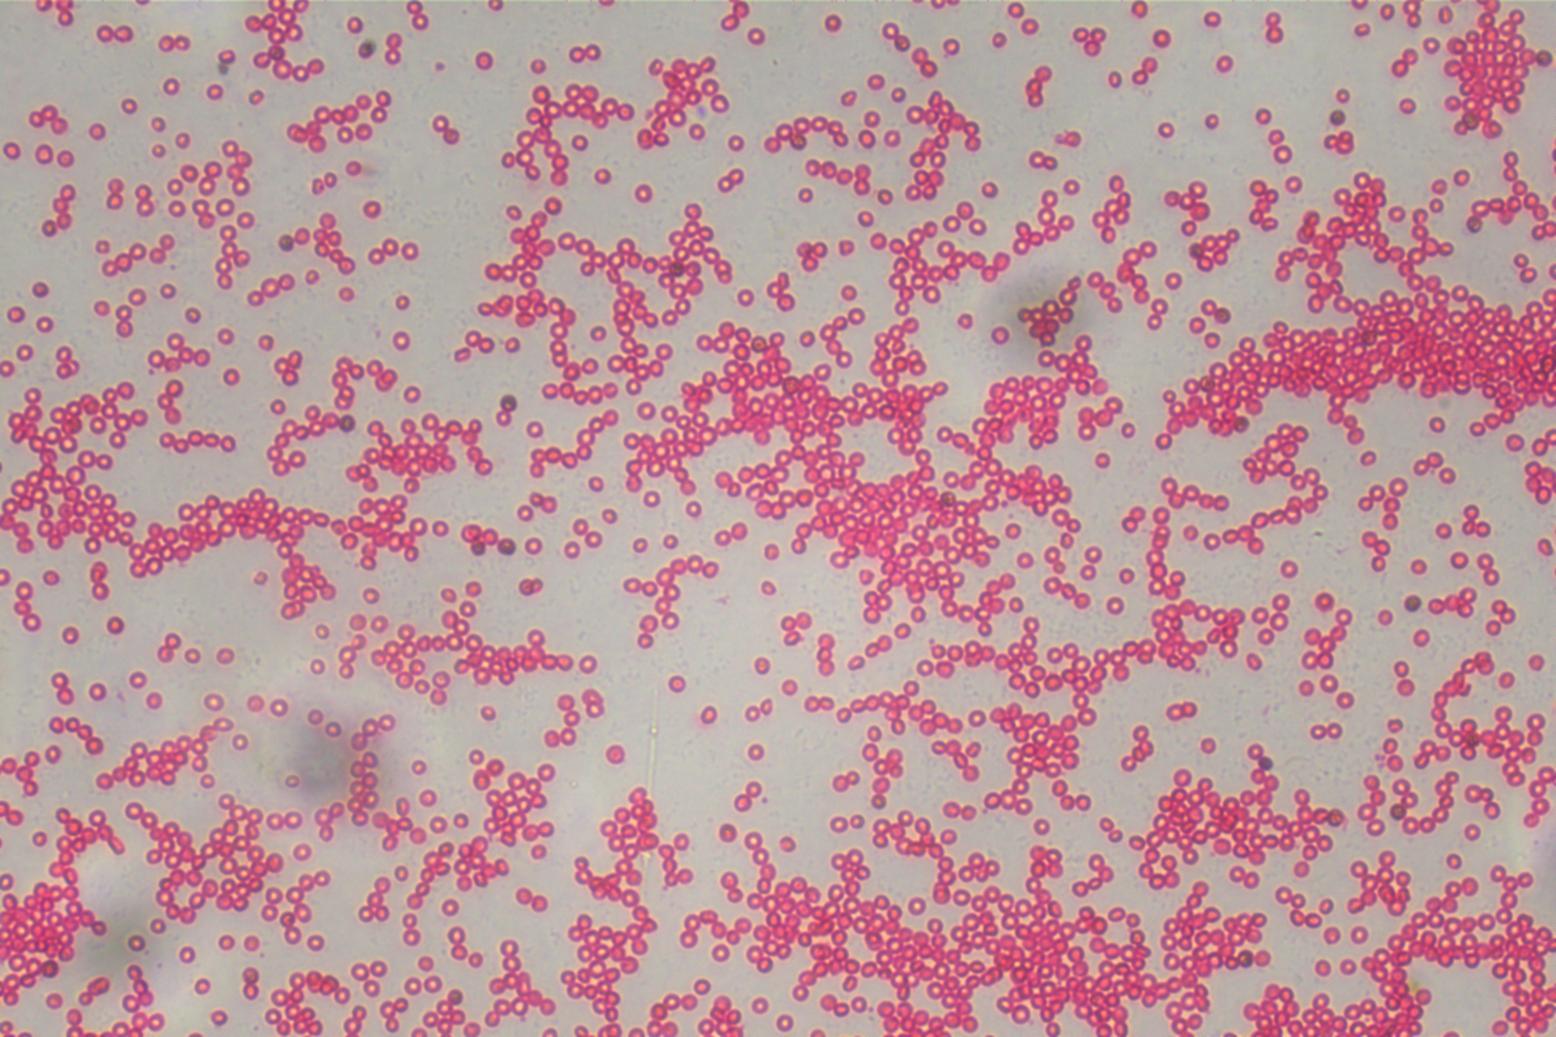 倒置显微镜下的红细胞